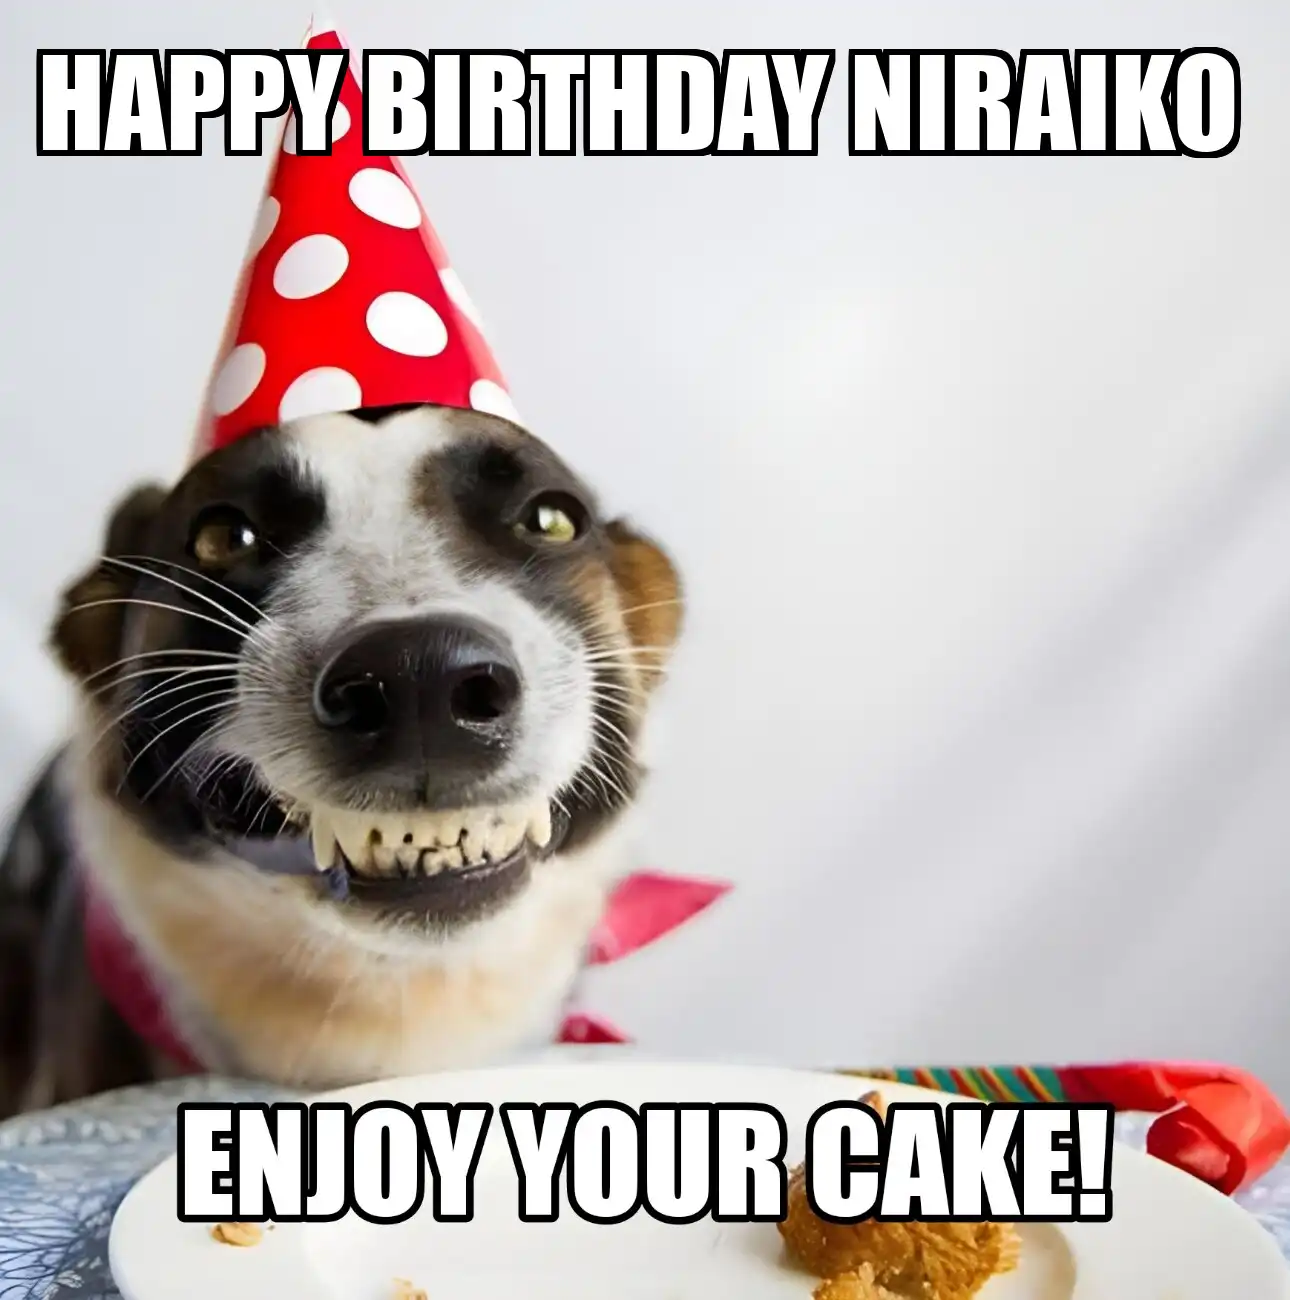 Happy Birthday Niraiko Enjoy Your Cake Dog Meme